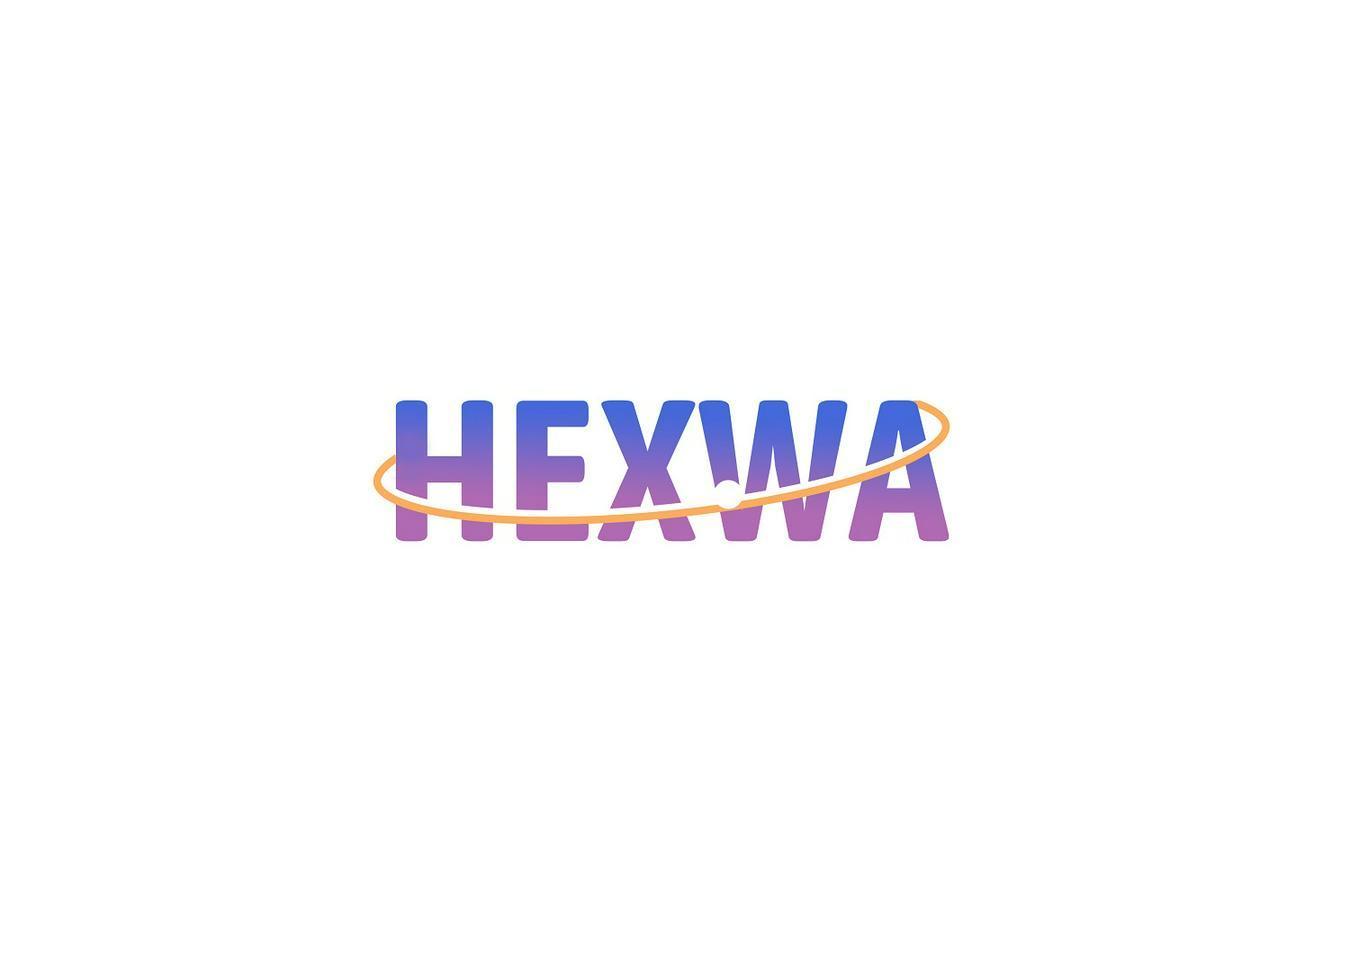 HEXWA